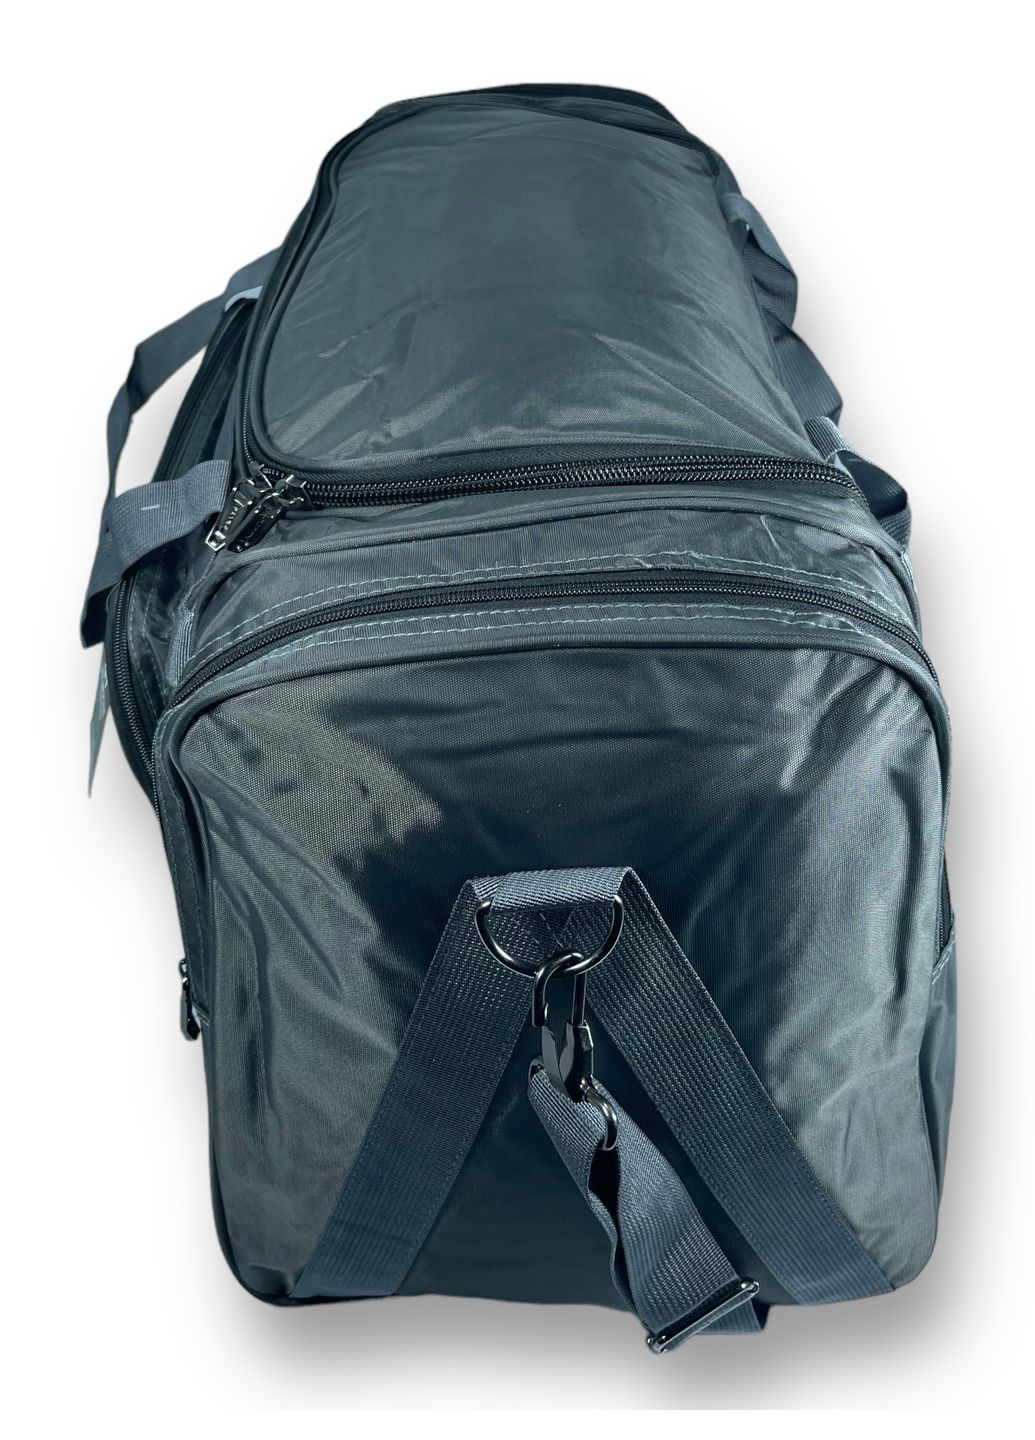 Дорожня сумка, 70 л, 1 відділення, 4 додаткових кишені, розмір: 65*35*30 см, сіра Filippini (285814831)